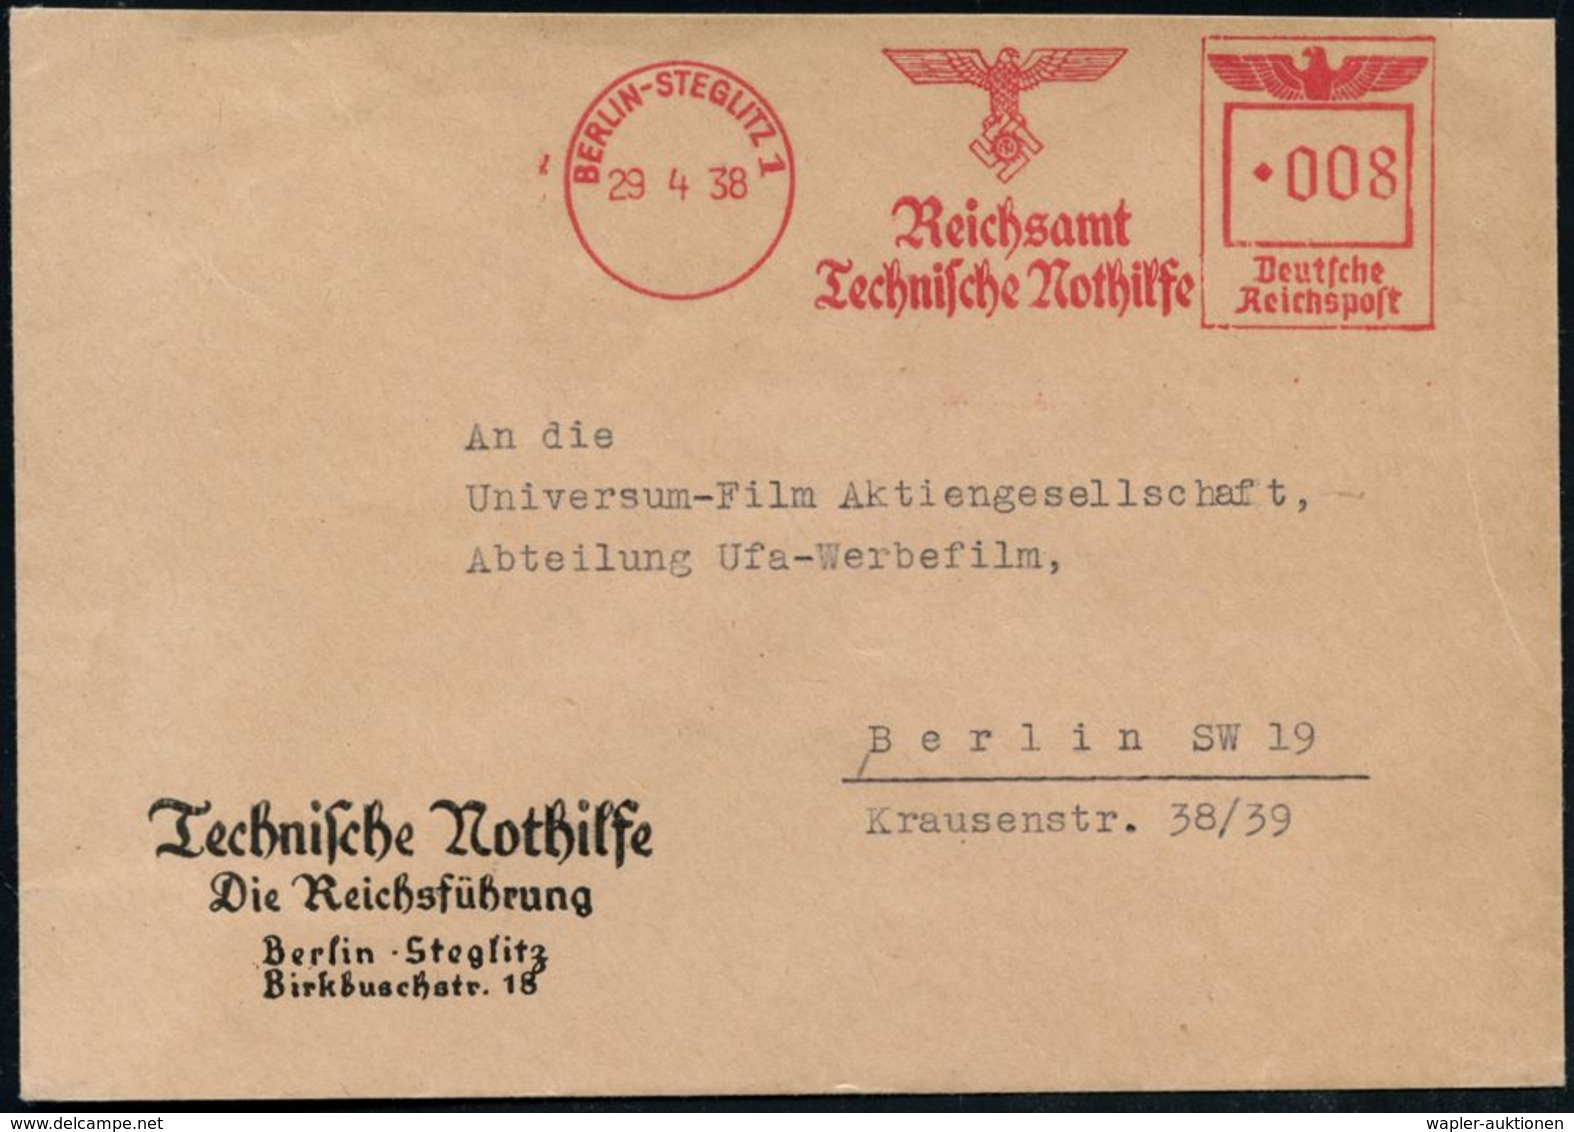 KATASTROPHENSCHUTZ / T.H.W. / T.N. : BERLIN-STEGLITZ 1/ Reichsamt/ Technische Nothilfe 1938 (29.4.) Seltener AFS (NS-Log - Sapeurs-Pompiers